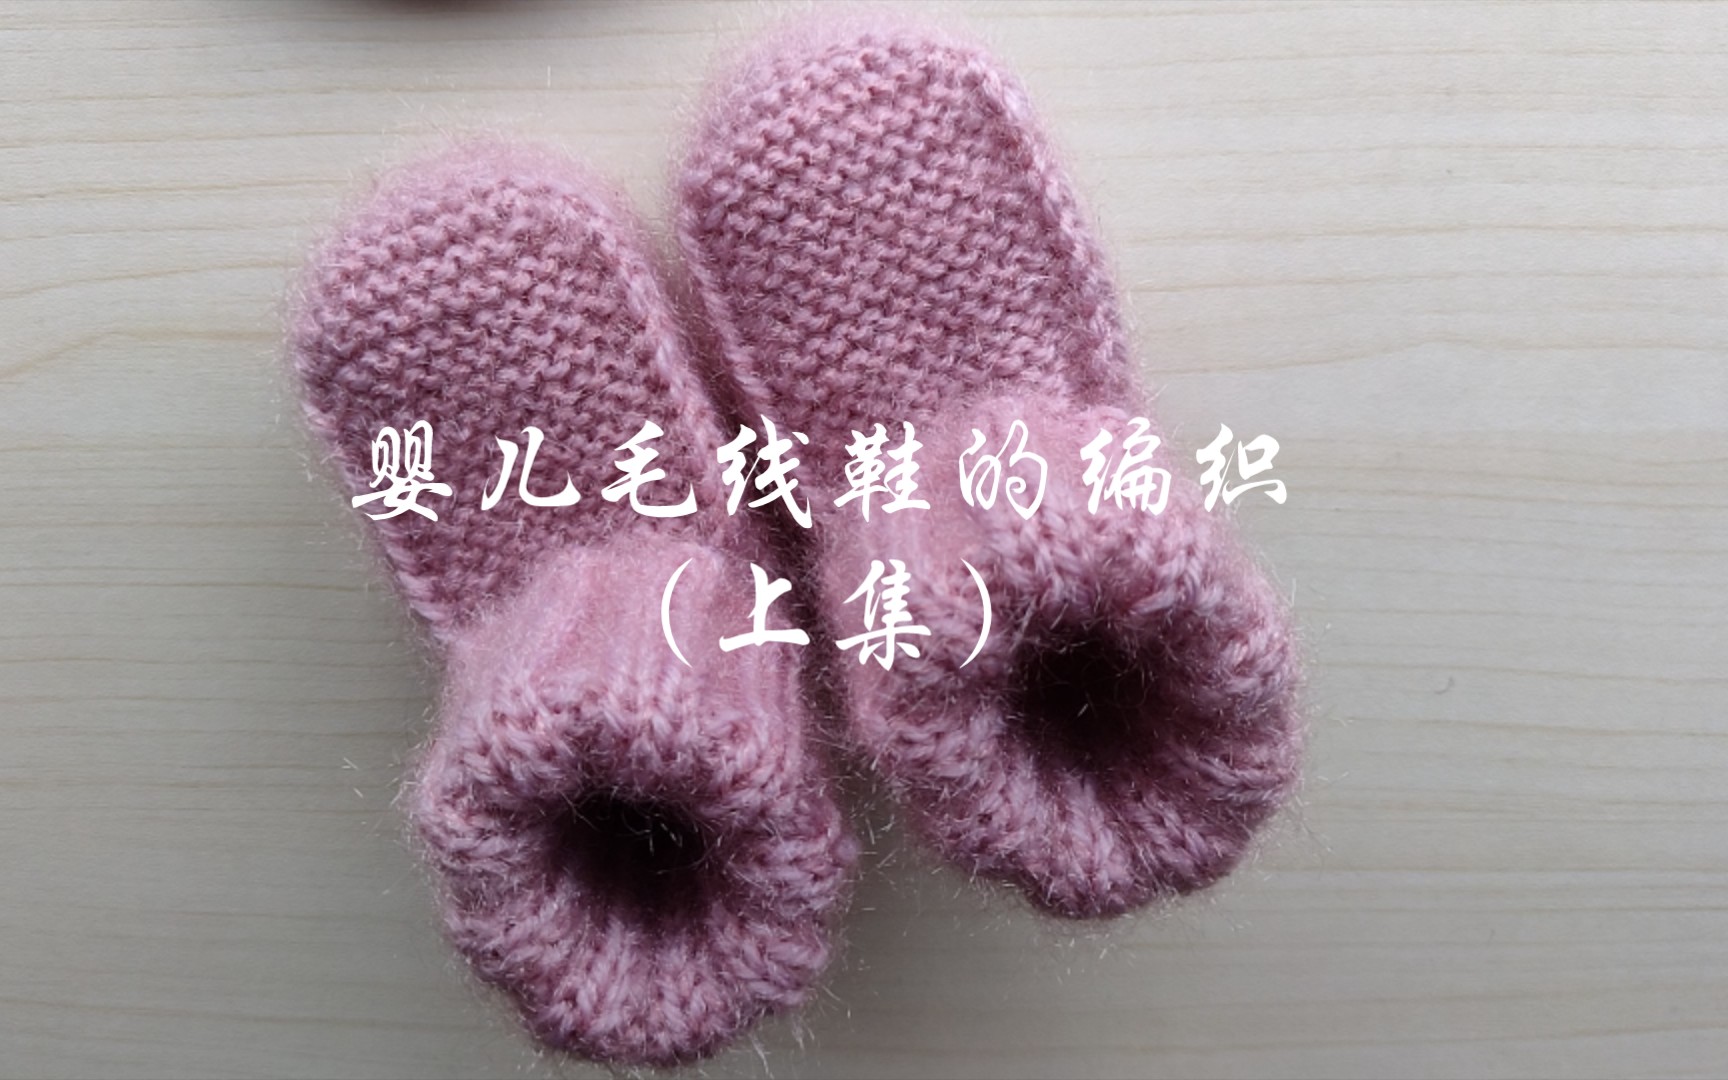 看图仿织可爱钩织结合宝宝鞋-编织教程-编织人生